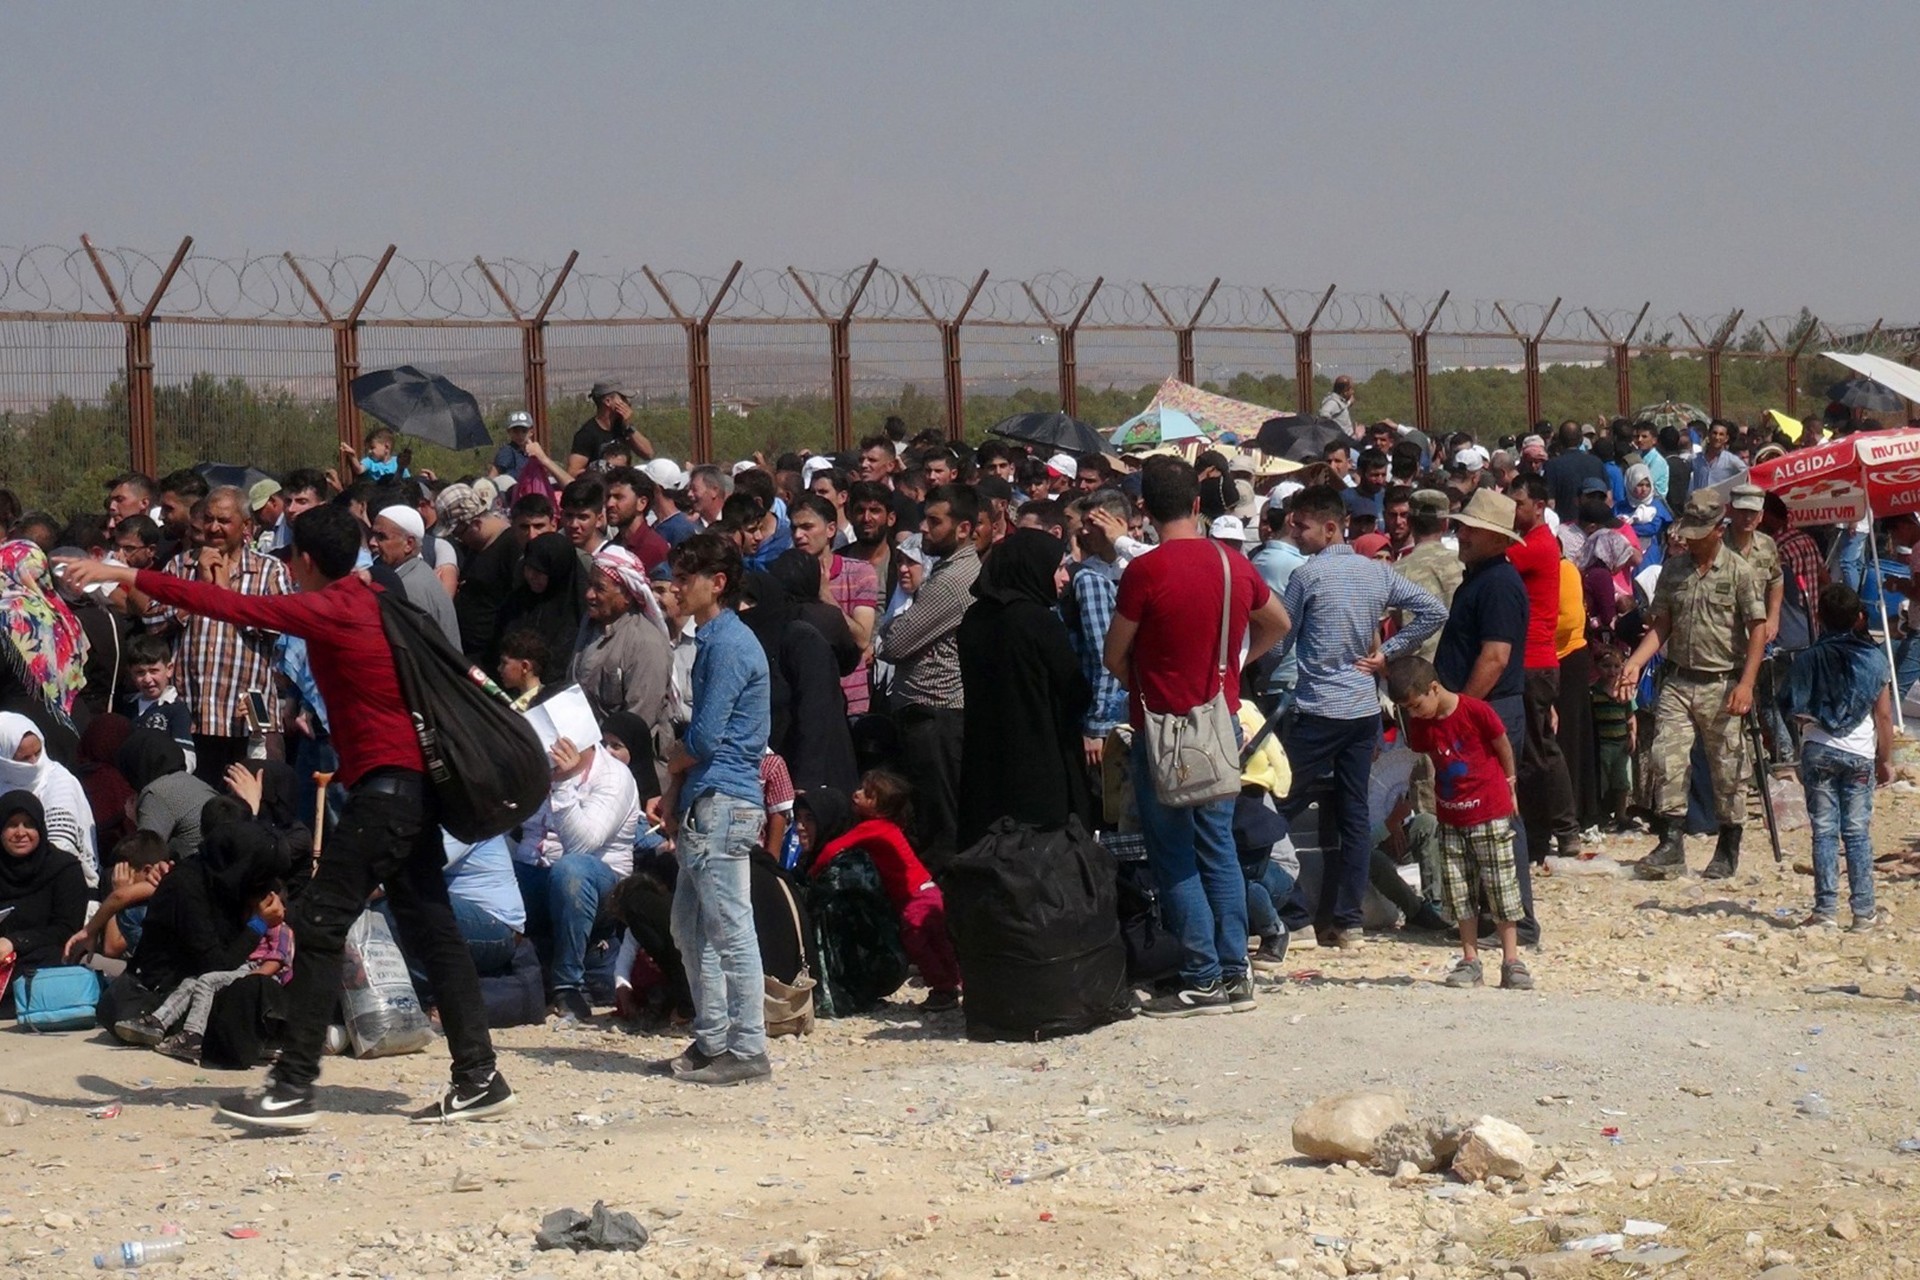 Sınırı geçmeyi bekleyen göçmenler